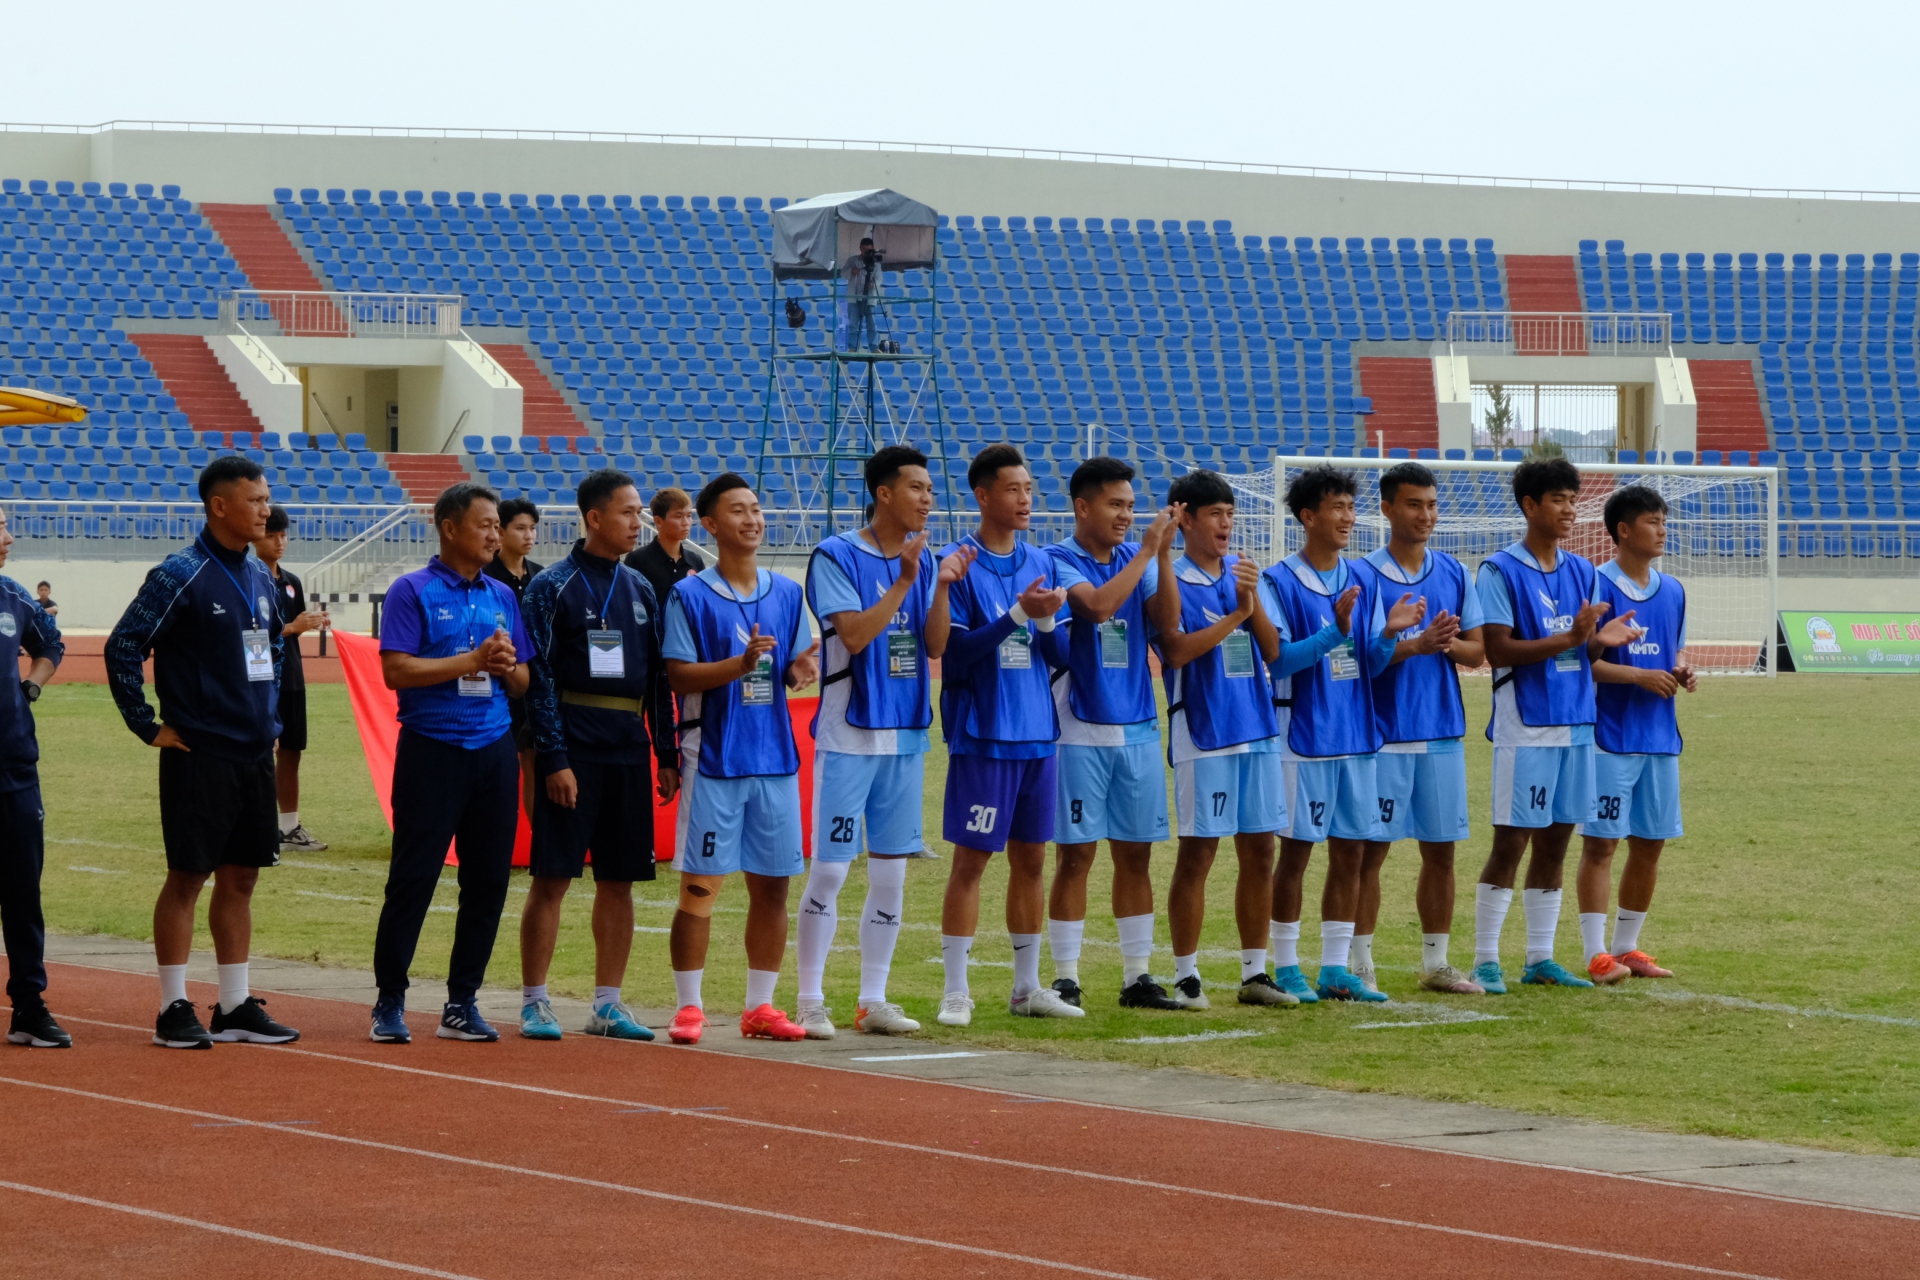 Đội Bóng đá Lâm Đồng – Trẻ hóa lực lượng, hướng đến xây dựng ổn định lối chơi